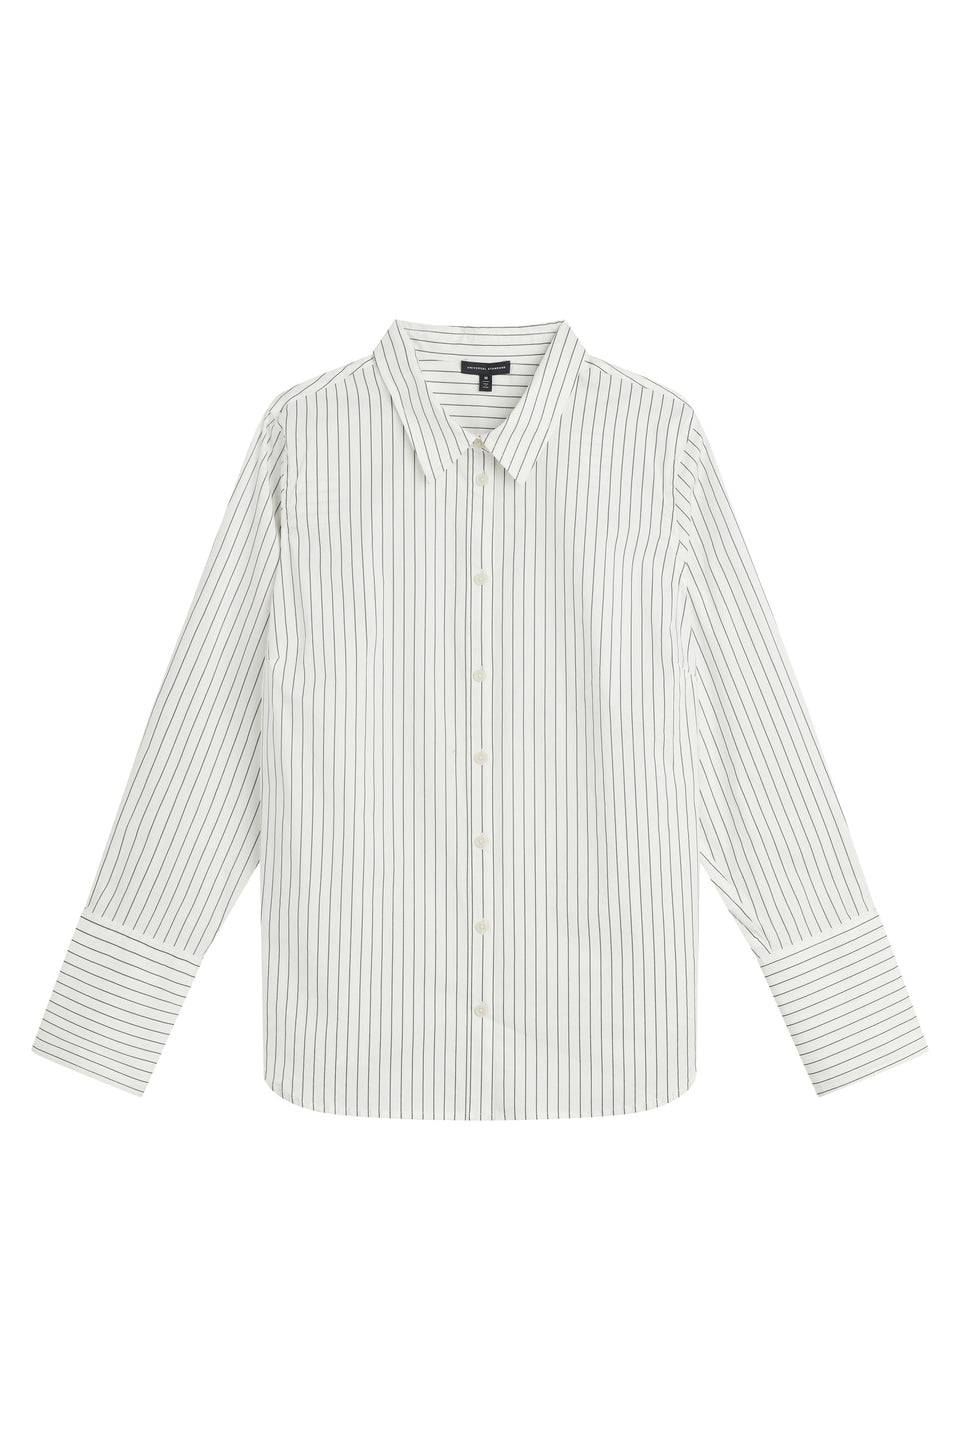 Henning x US Madison Shirt - White/Grey Stripe Zoom image 7